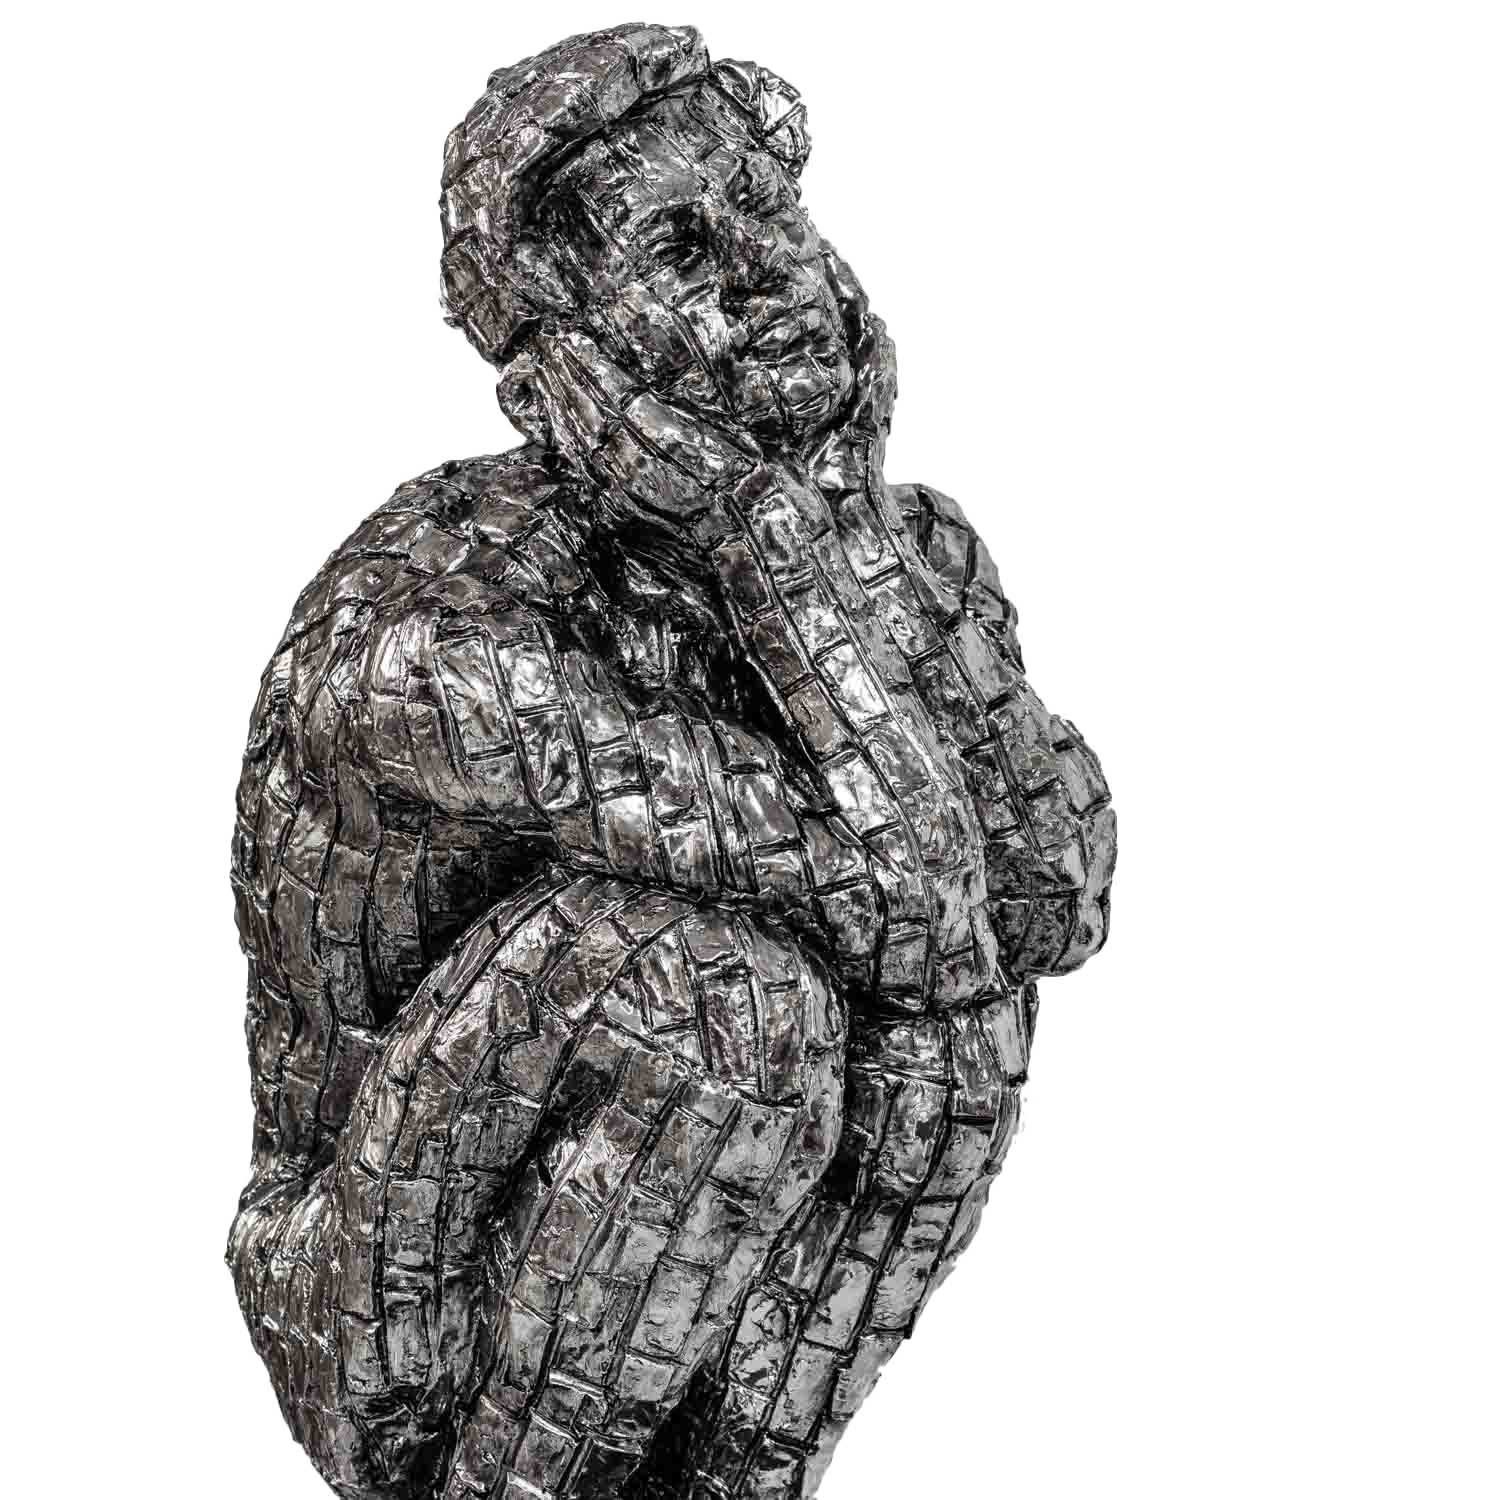 Aubaho Dekofigur Figur Skulptur Antik-Stil 35cm Kunst Dekoration - Mann